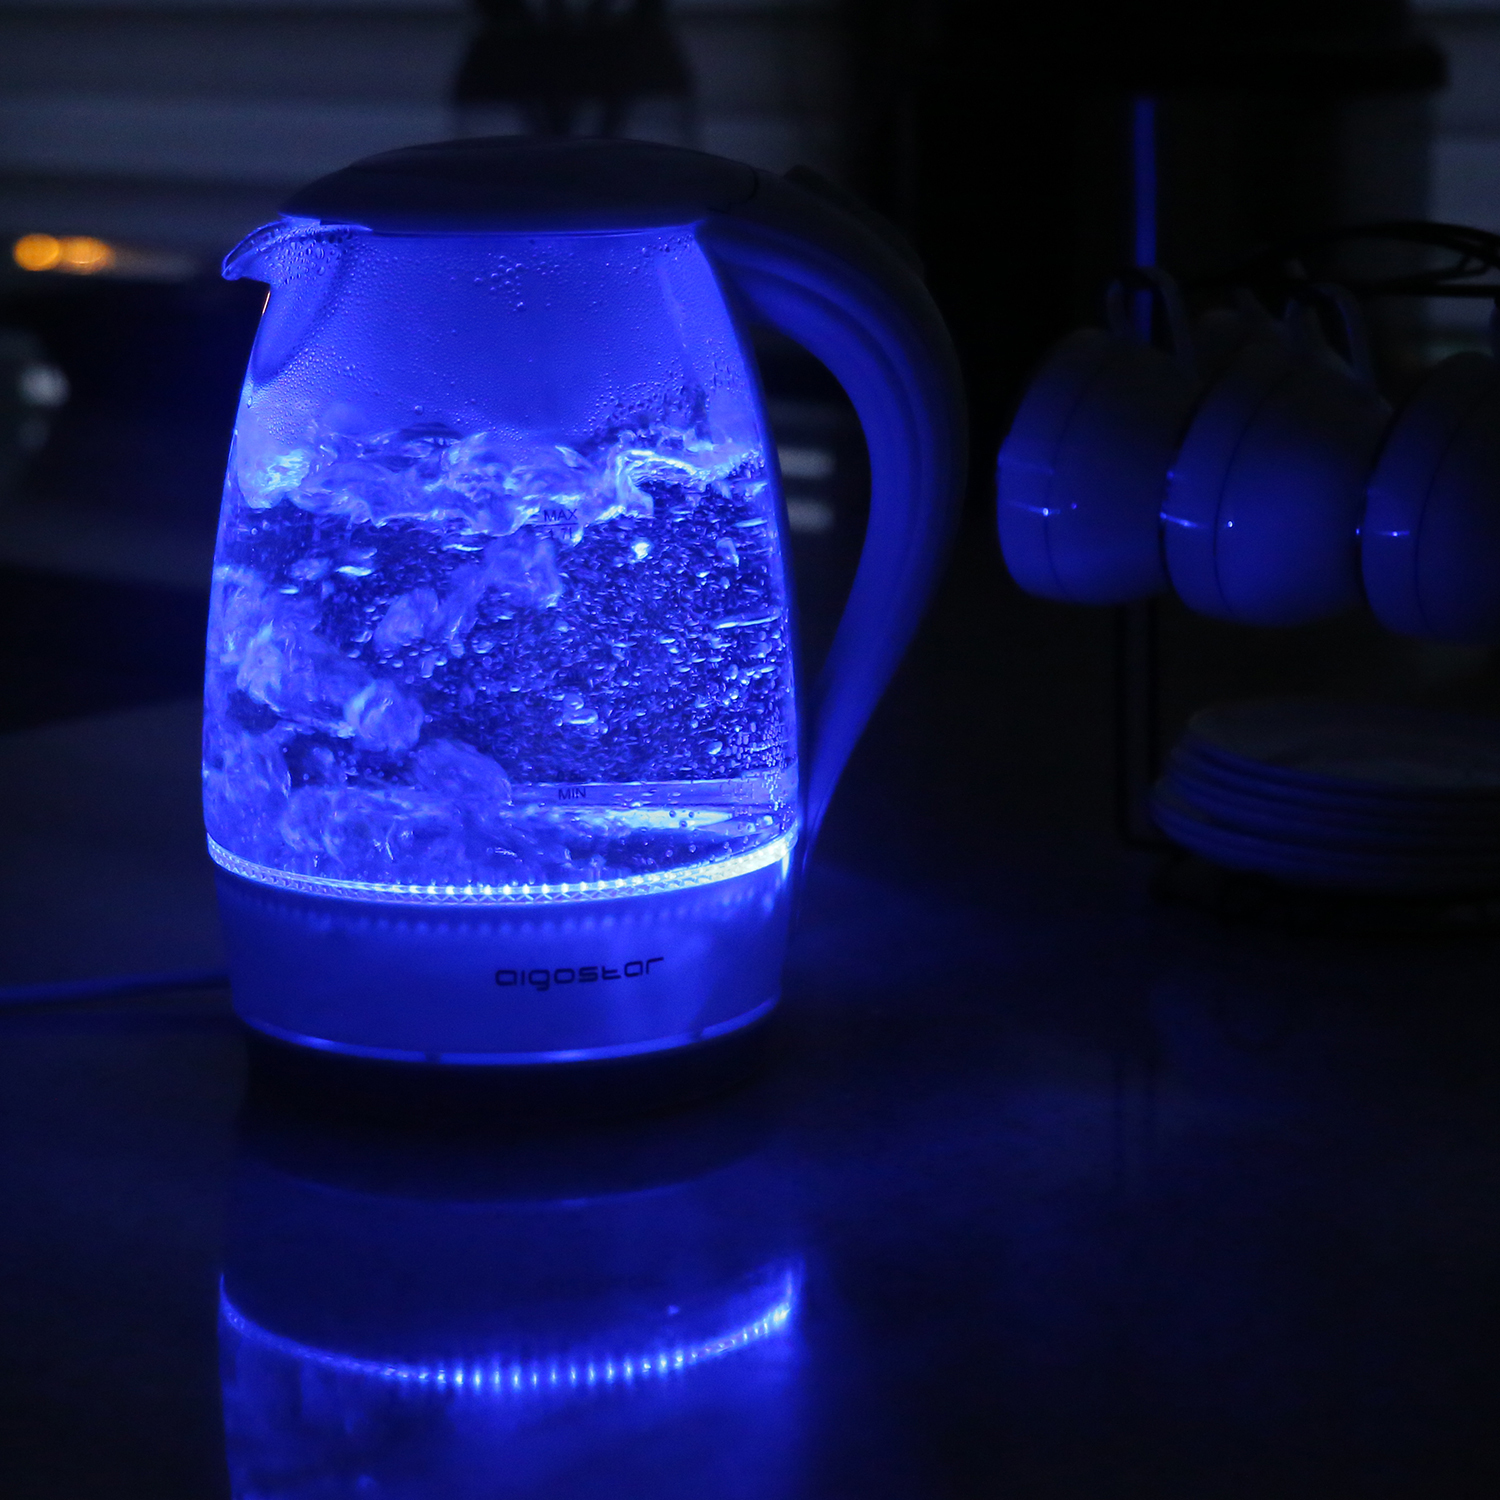 Aigostar Eve 30GON- Szklany czajnik z podświetleniem LED, 2200W , 1.7 L. Zabezpieczenie przed przegrzaniem, BPA Free, Biały ekskluzywny projekt